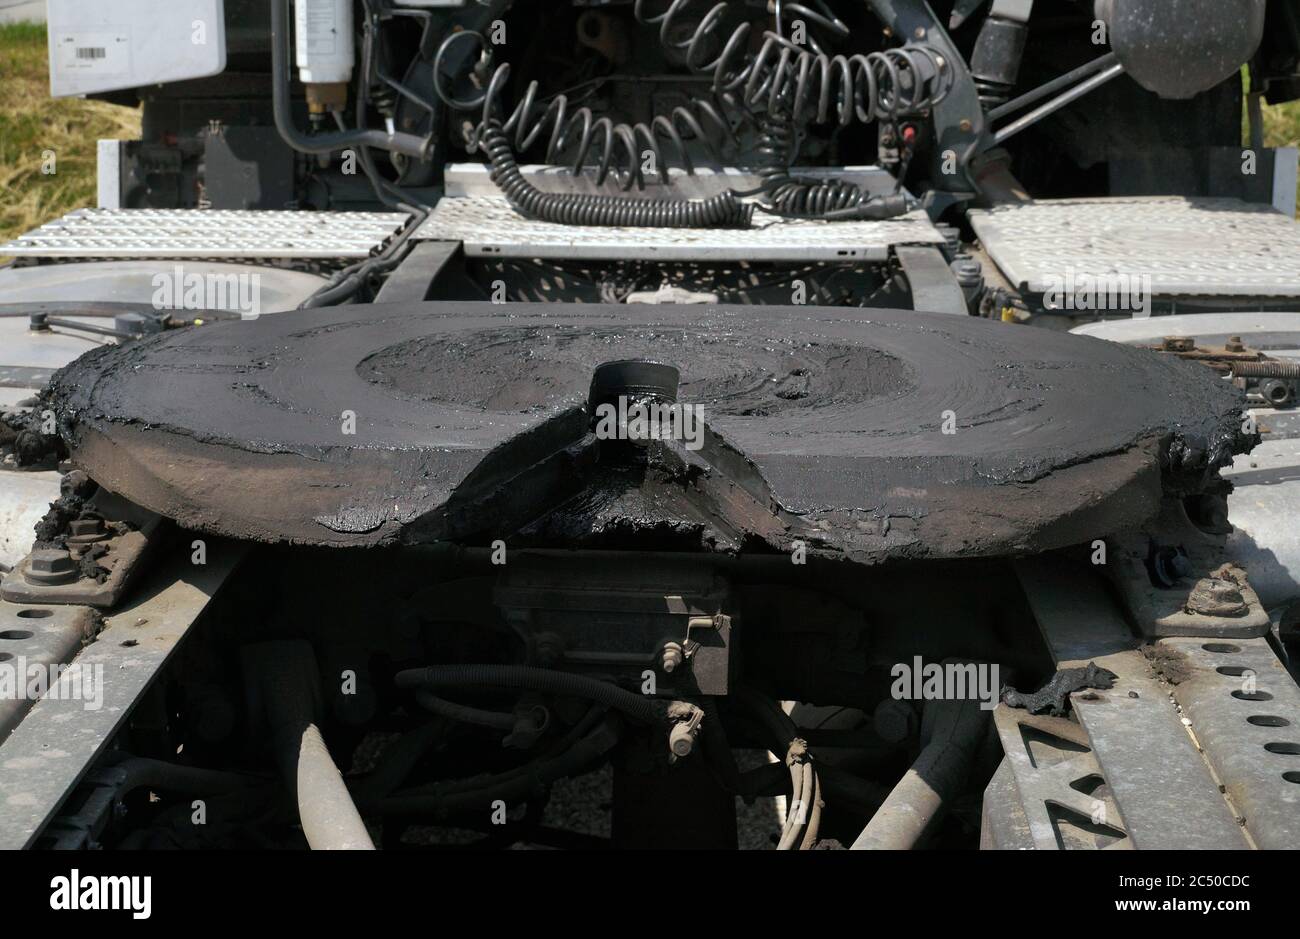 Vista della parte posteriore del carrello a 18 ruote. I giunti della ralla visibili sono montati su un'unità motrice per il collegamento al rimorchio. Foto Stock